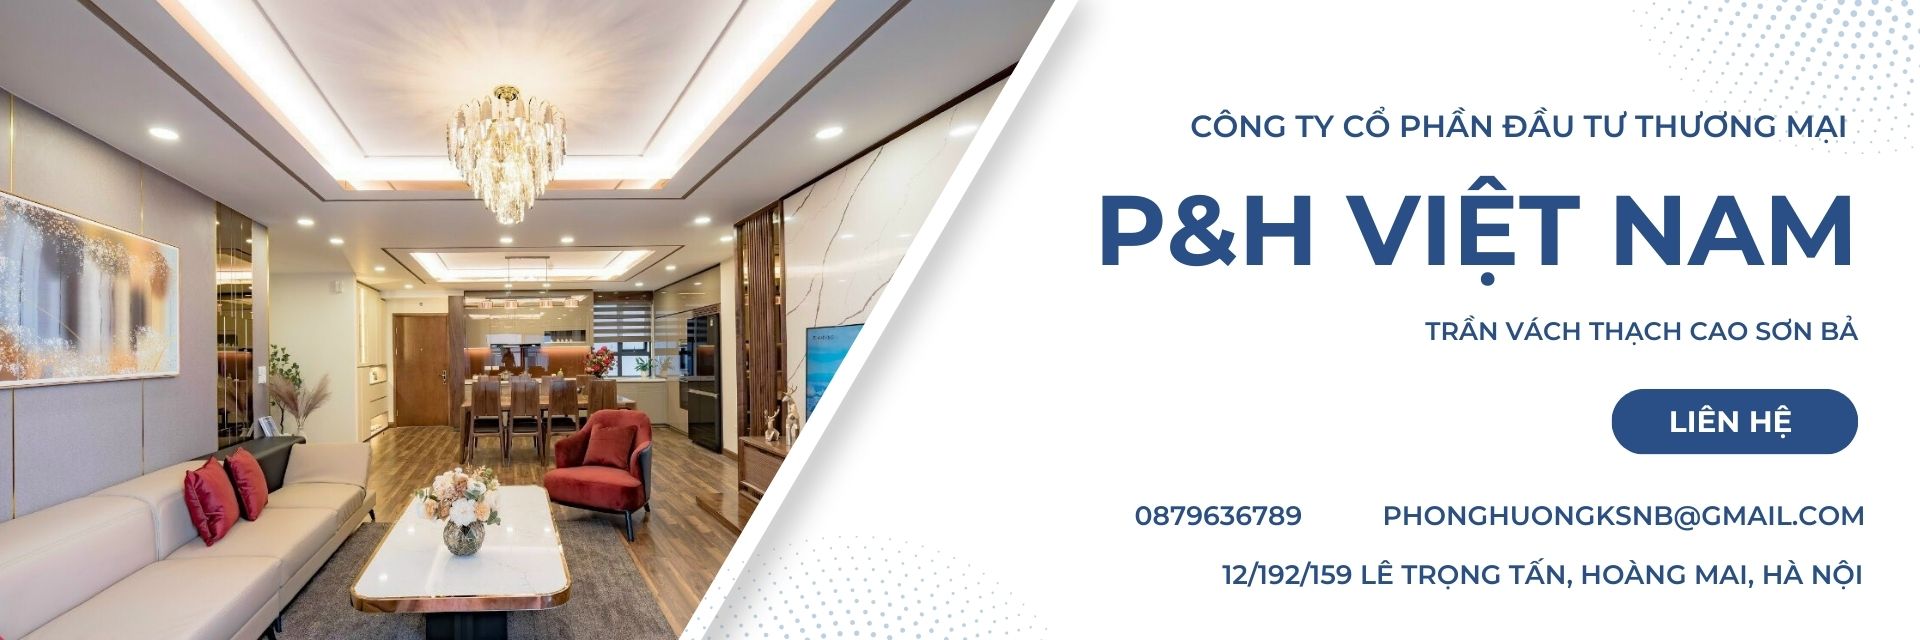 Công ty cổ phần đầu tư thương mại P&H Việt Nam